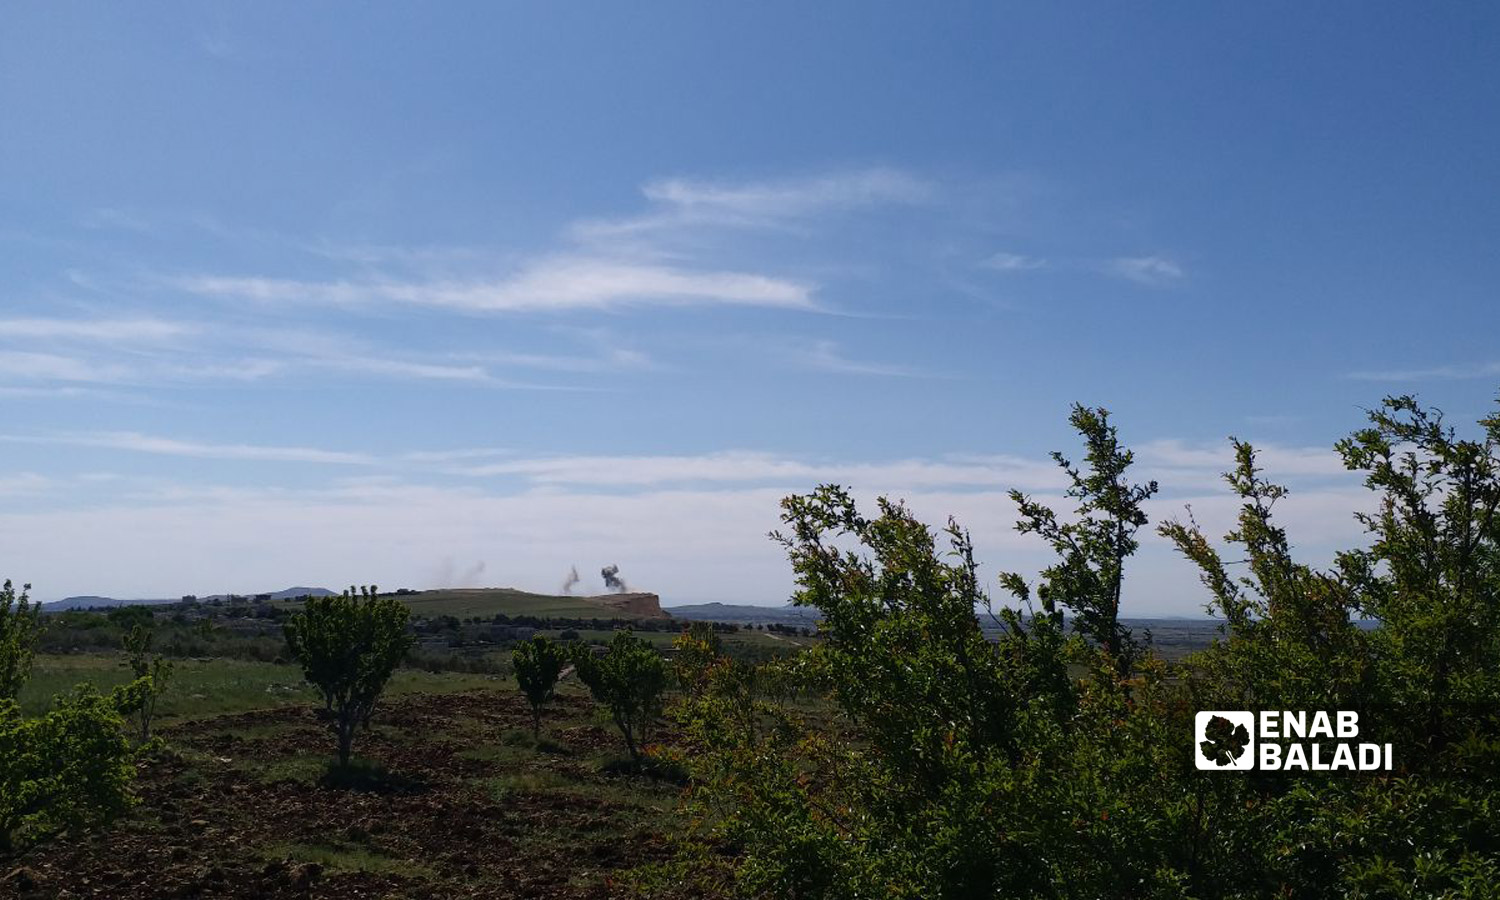 استهداف مناطق تابعة لـ"اللواء 90" في بلدة جباتا الخشب بريف القنيطرة الشمالي- 11 من أيار 2022 (عنب بلدي)